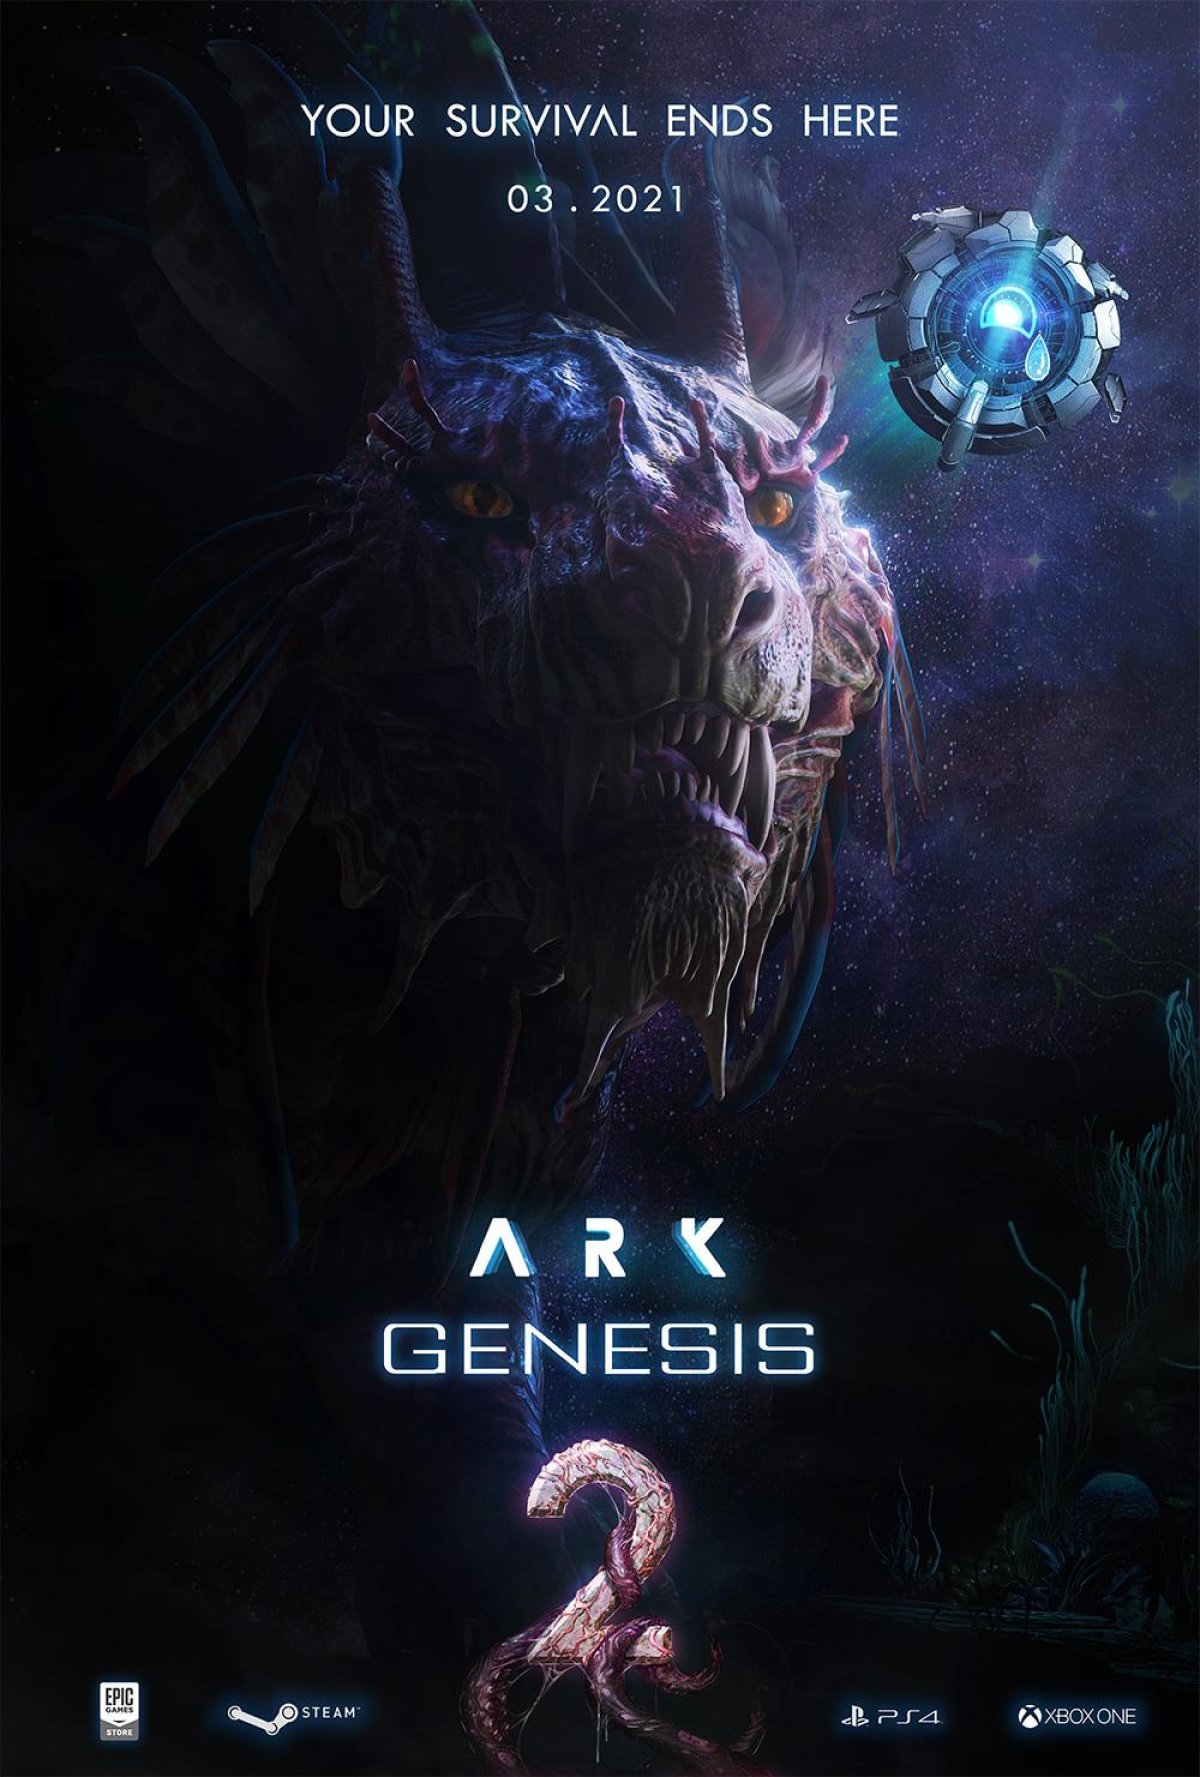 Ark's final DLC has been delayed